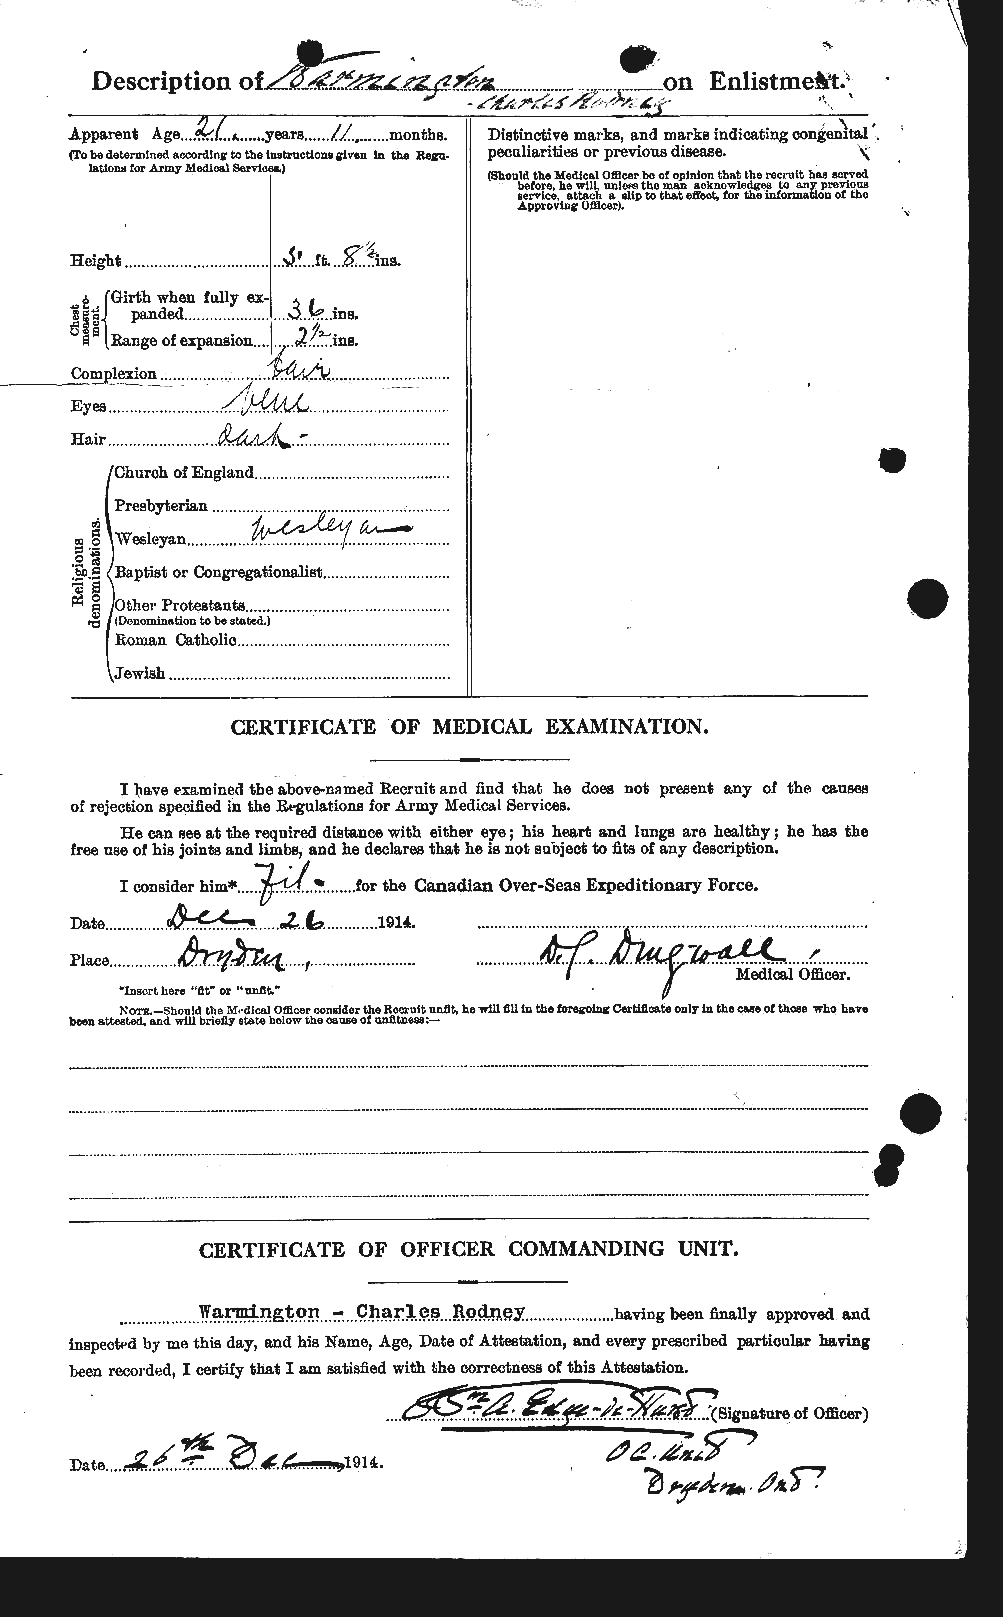 Dossiers du Personnel de la Première Guerre mondiale - CEC 657237b